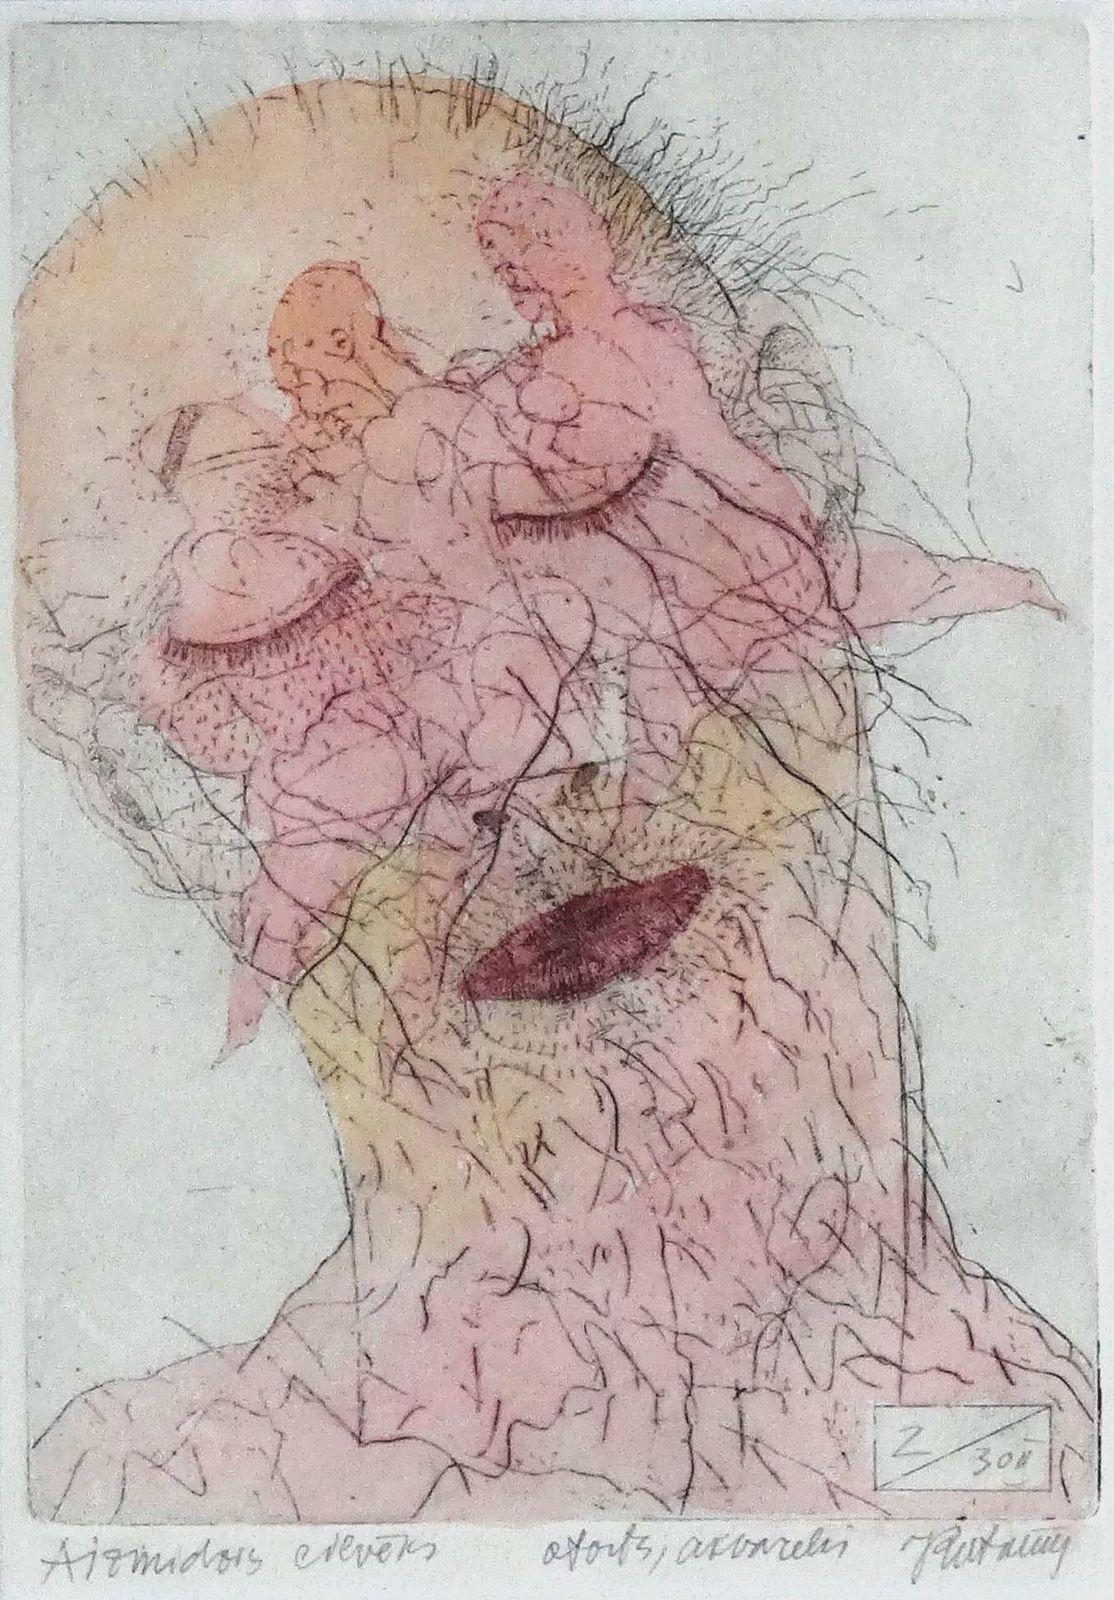 L'homme endormi. 2000. Papier, eau-forte, aquarelle, 19x13 cm